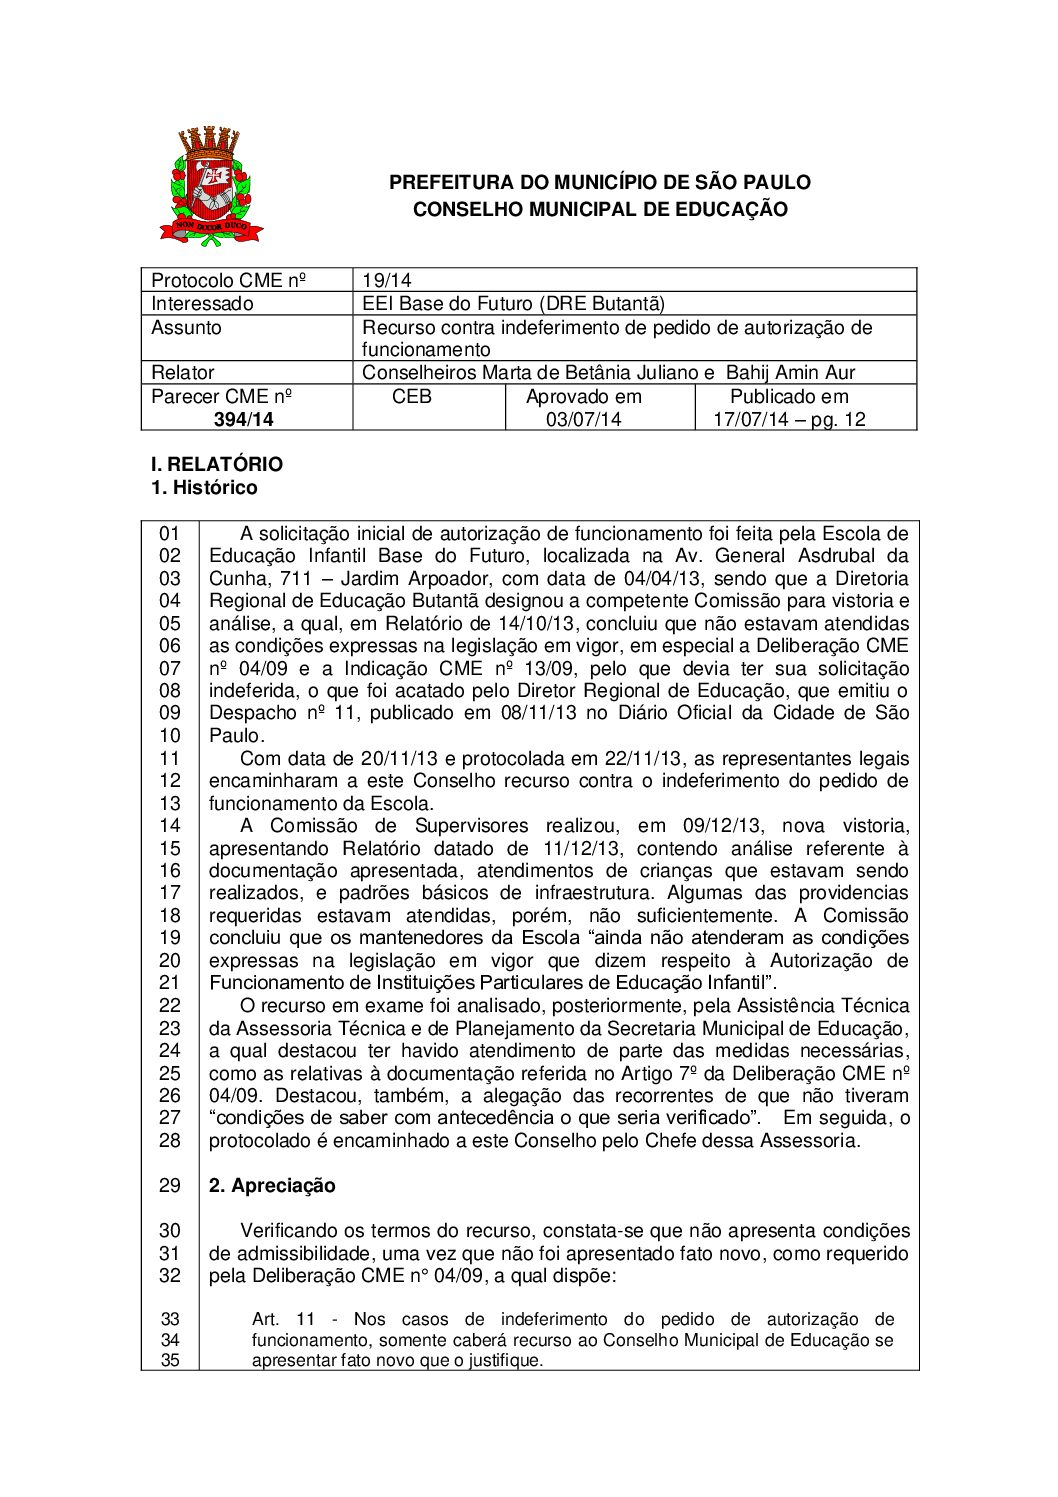 Parecer CME nº 394/2014 - EEI Base do Futuro (DRE Butantã) - Recurso contra indeferimento de pedido de autorização de funcionamento 